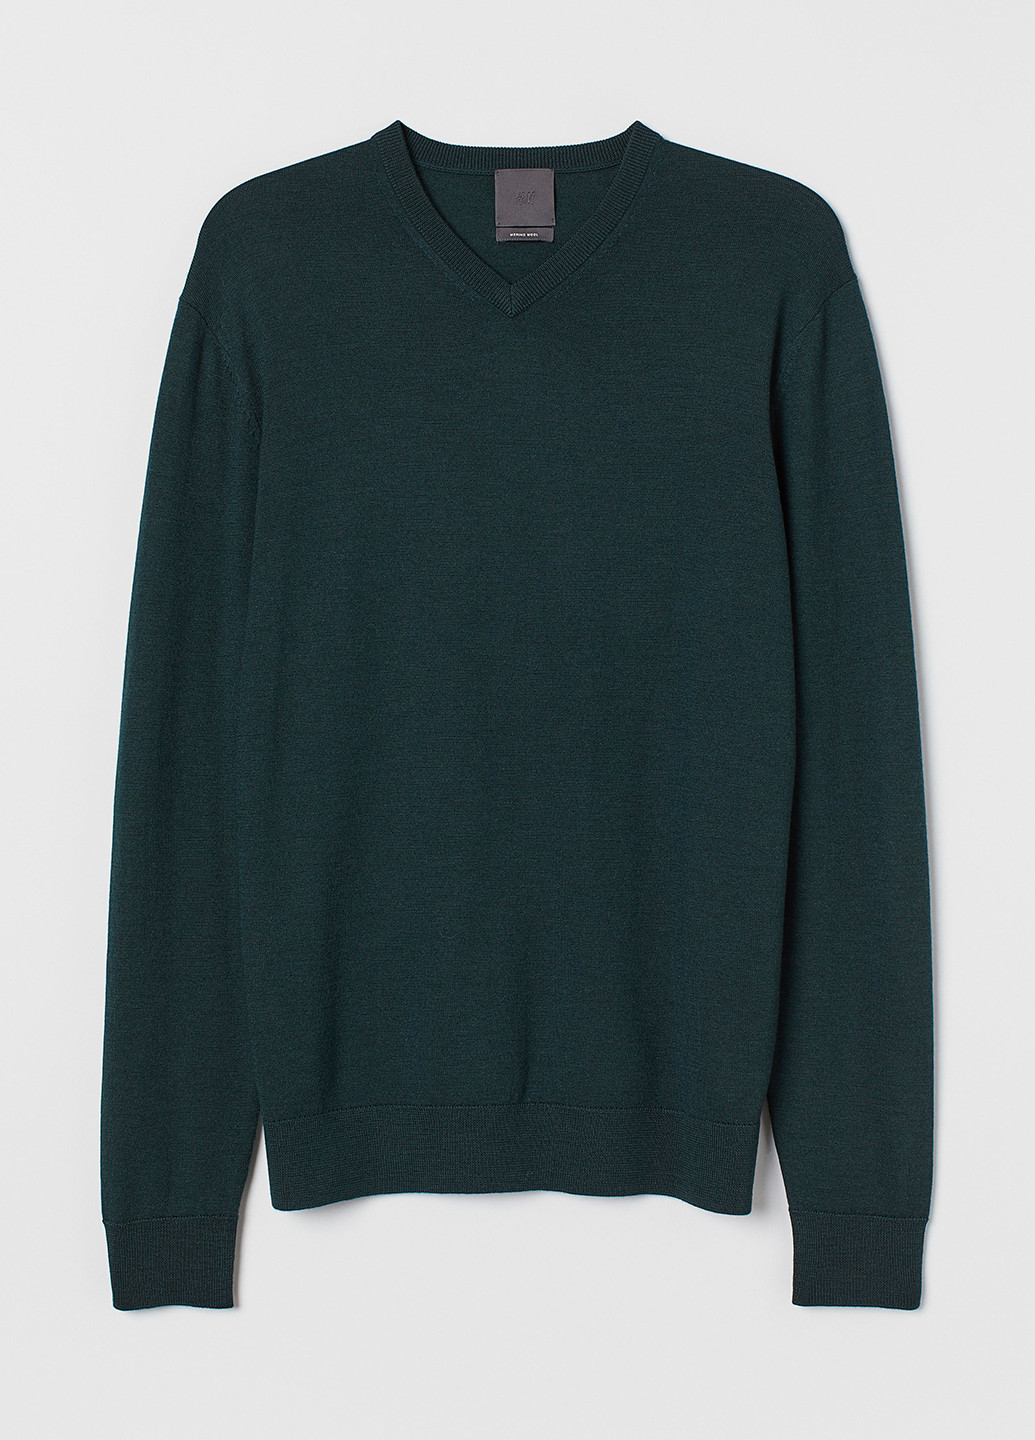 Темно-зеленый демисезонный пуловер пуловер H&M